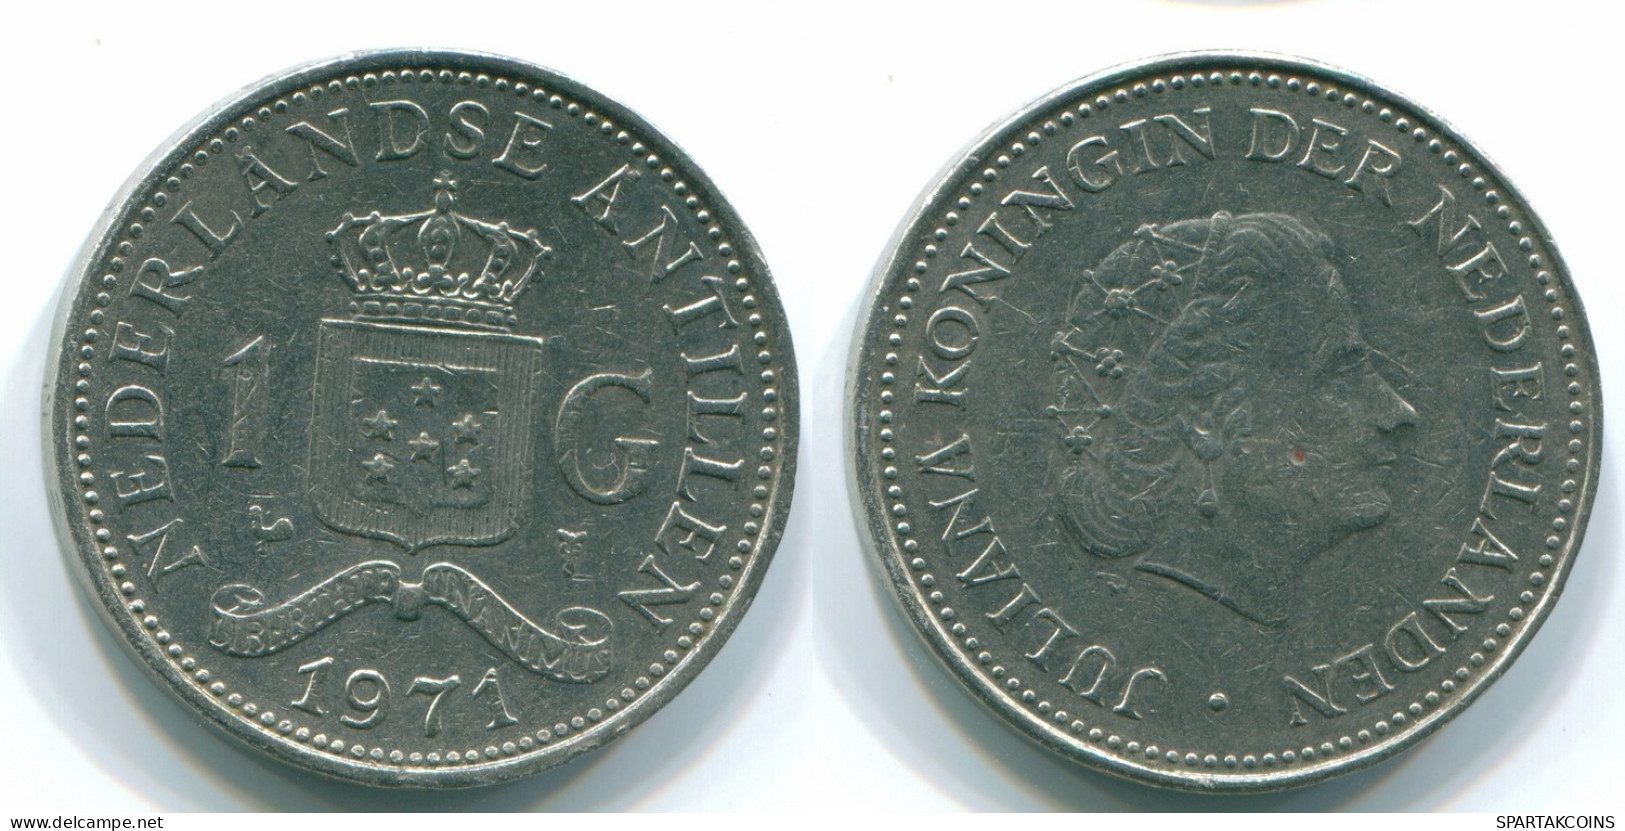 1 GULDEN 1971 NIEDERLÄNDISCHE ANTILLEN Nickel Koloniale Münze #S11956.D.A